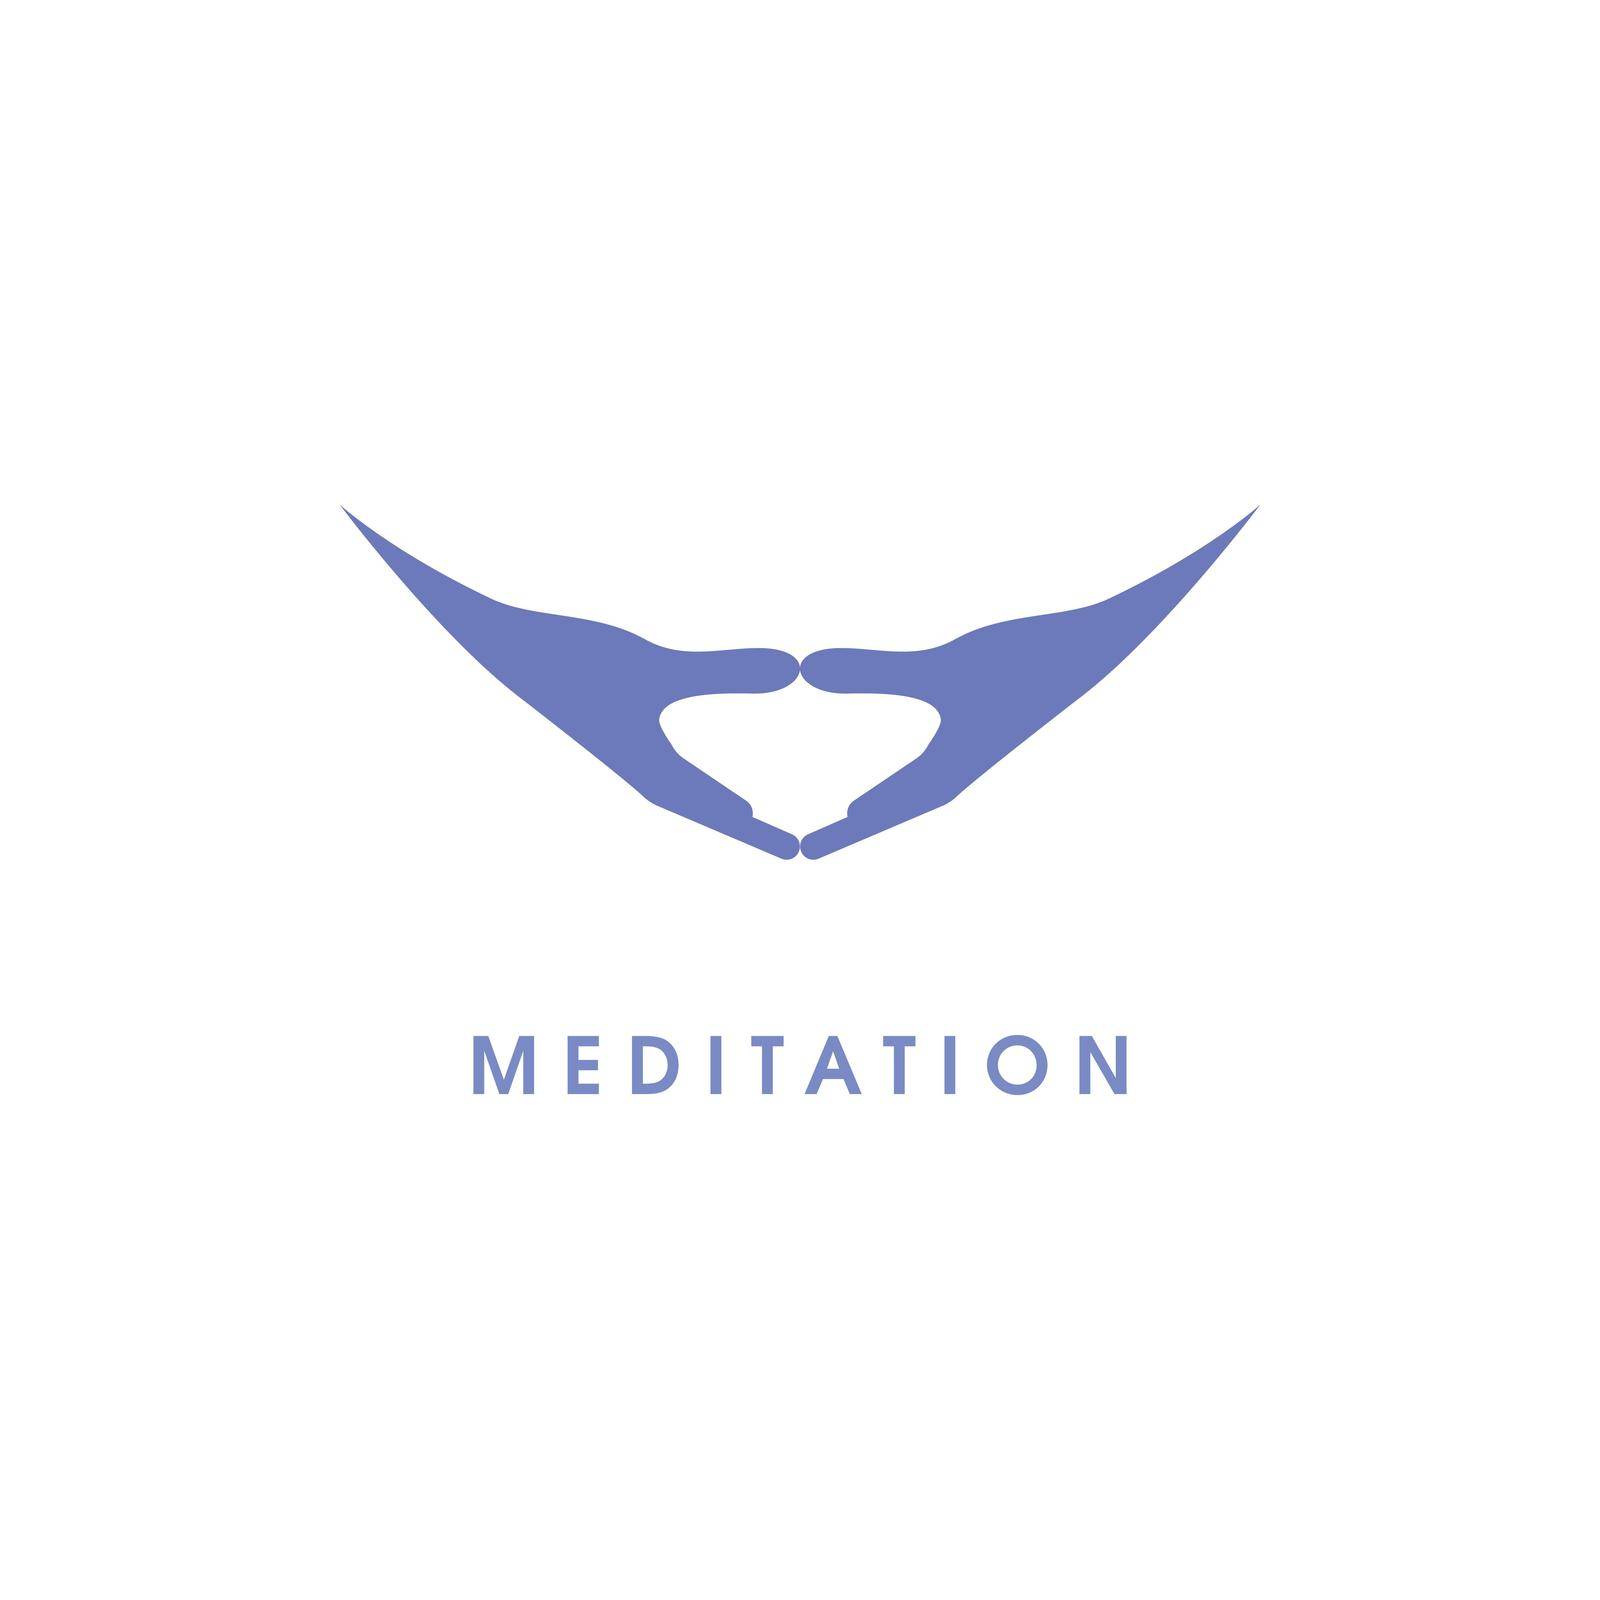 Meditation yoga arm by awk